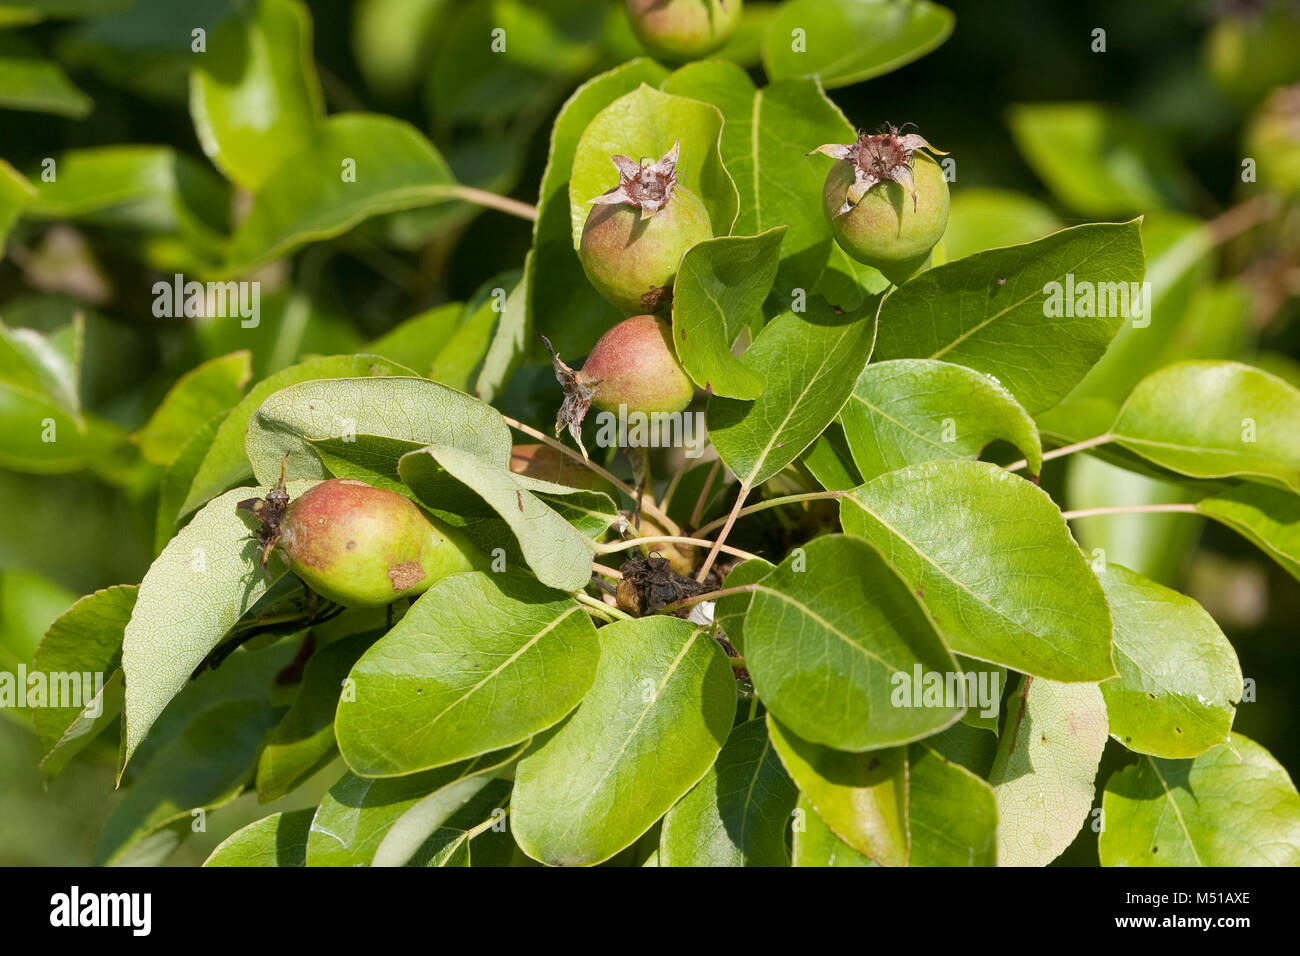 Wilde Birne, Wildbirne, Wilder Birnbaum, Holzbirne, Holz-Birne, Pyrus pyraster, Wild Pear, Poirier sauvage Stock Photo